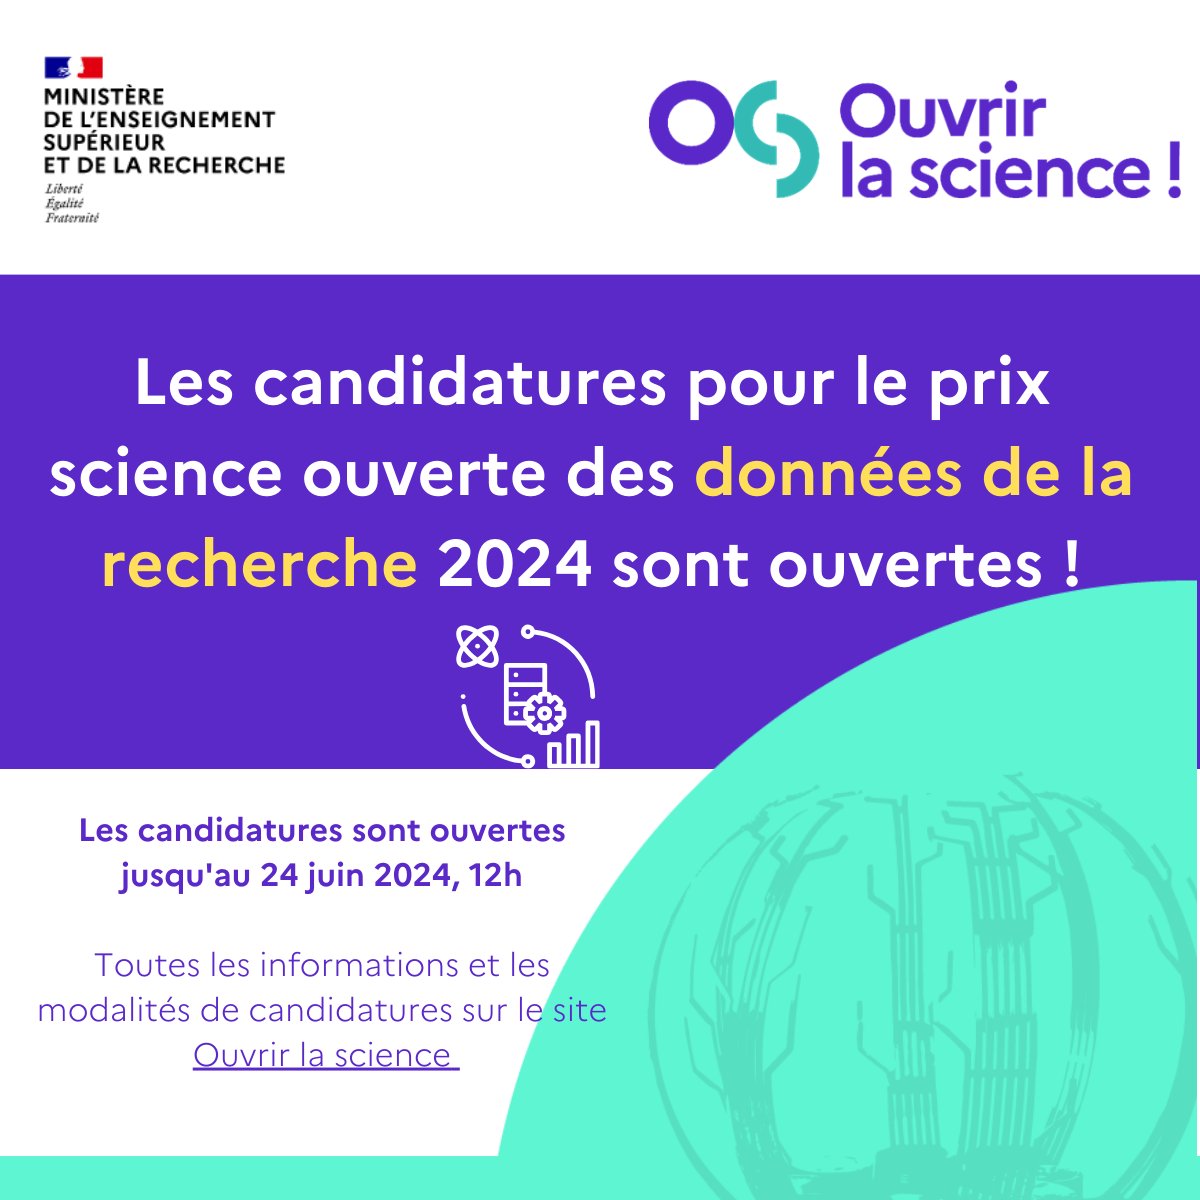 Candidatez pour le prix #scienceouverte des #donneesrecherche 2024 jusqu'au 24 juin 2024 ! ouvrirlascience.fr/les-candidatur…